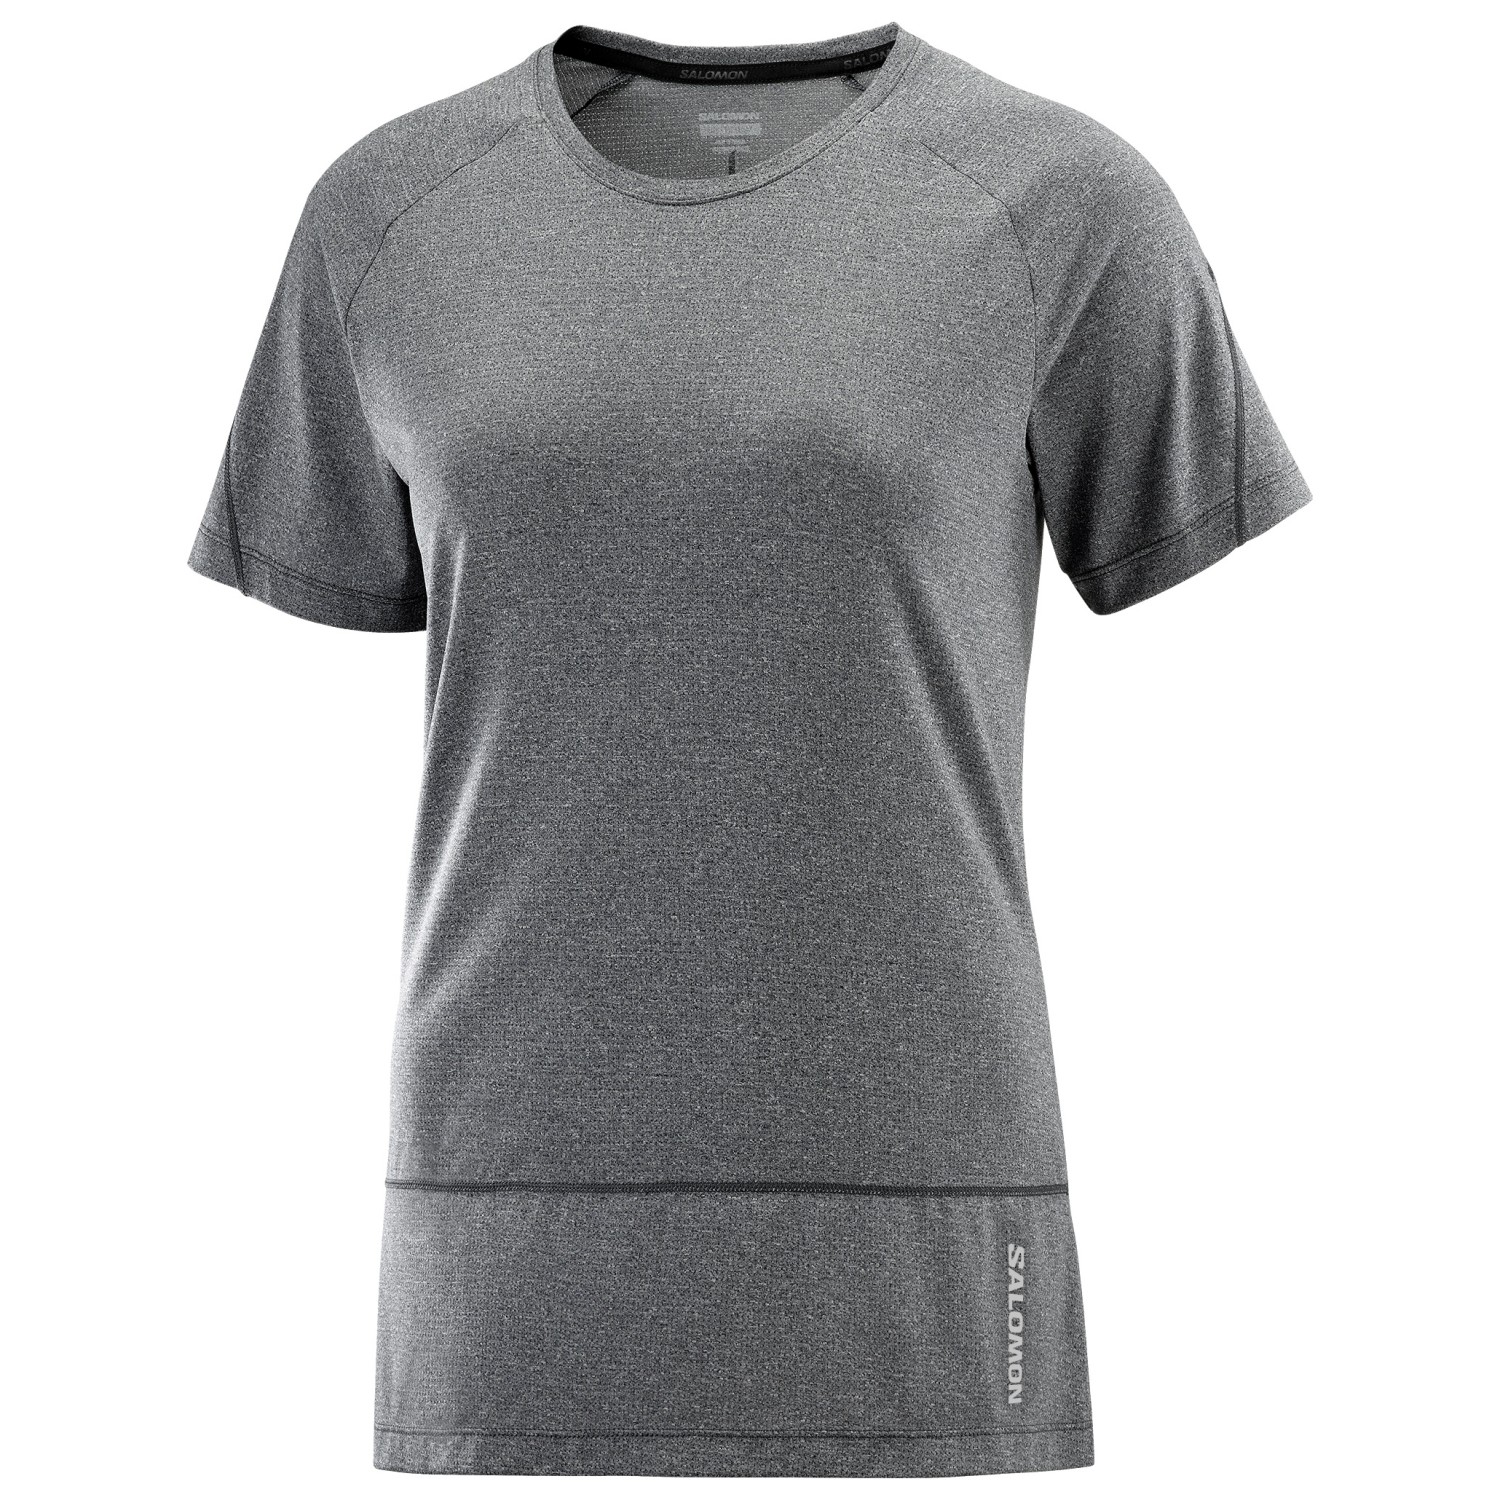 Беговая рубашка Salomon Women's Cross Run S/S Tee, цвет Deep Black/Heather